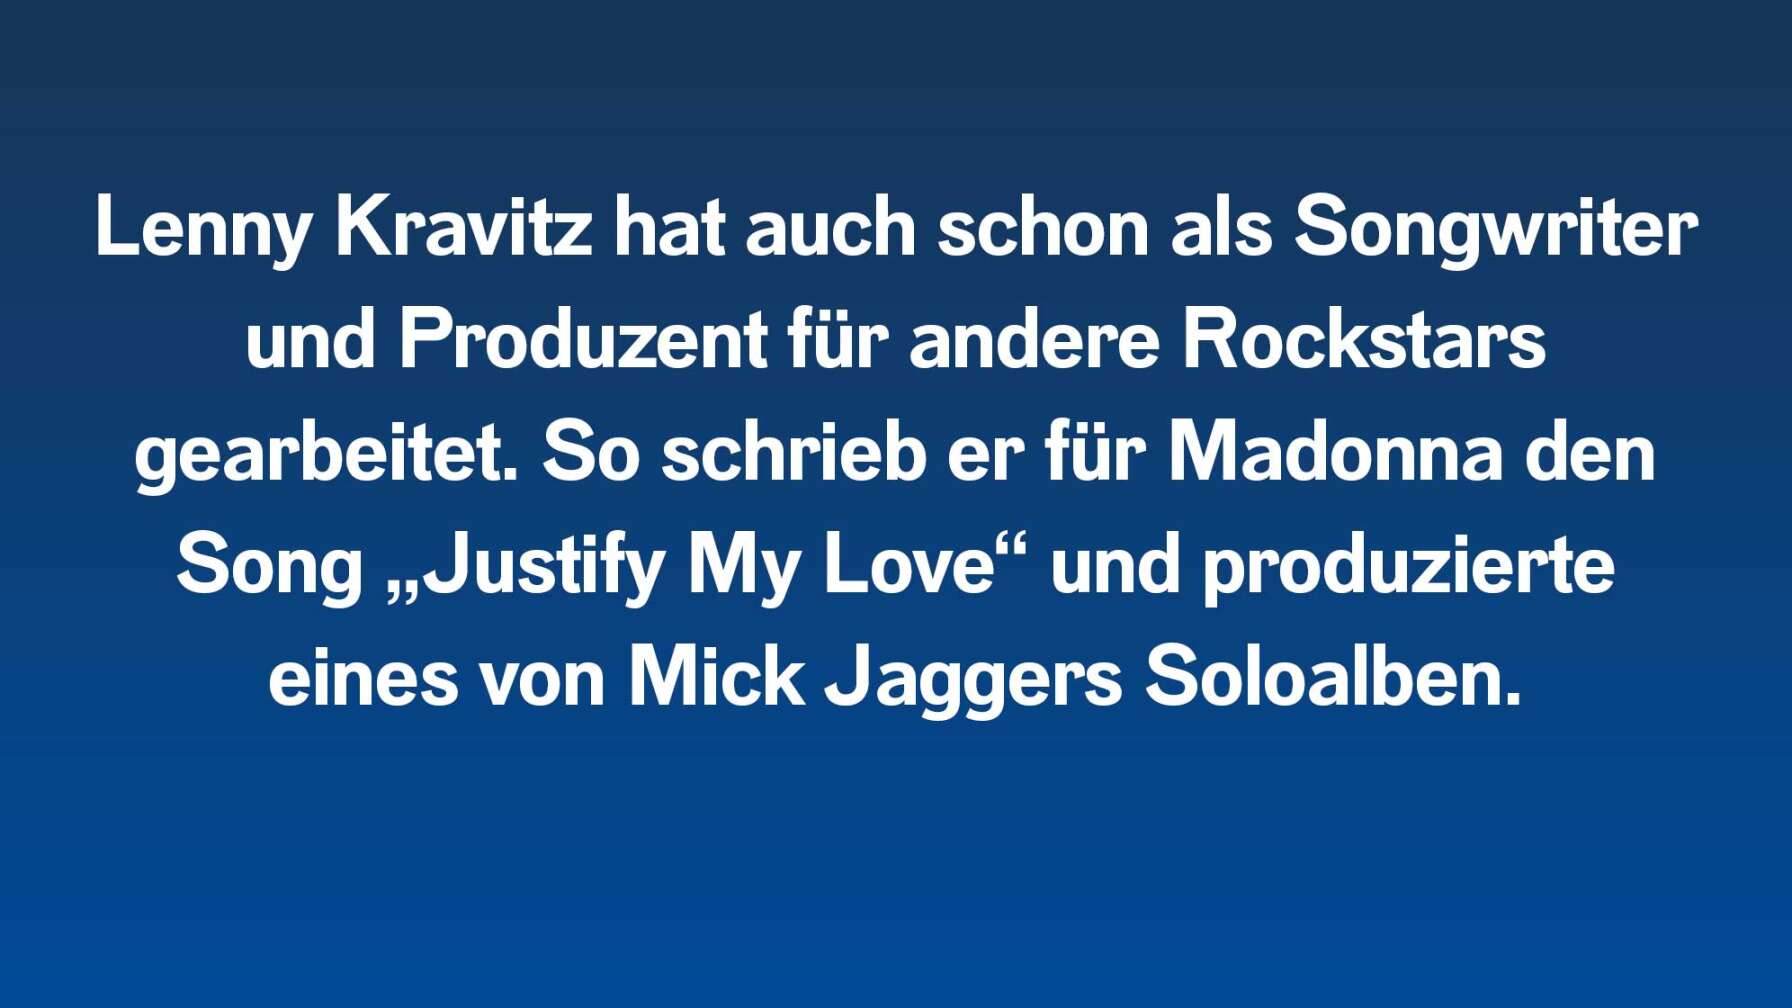 Lenny Kravitz hat auch schon als Songwriter und Produzent für andere Rockstars gearbeitet. So schrieb er für Madonna den Song „Justify My Love“ und produzierte eines von Mick Jaggers Soloalben.